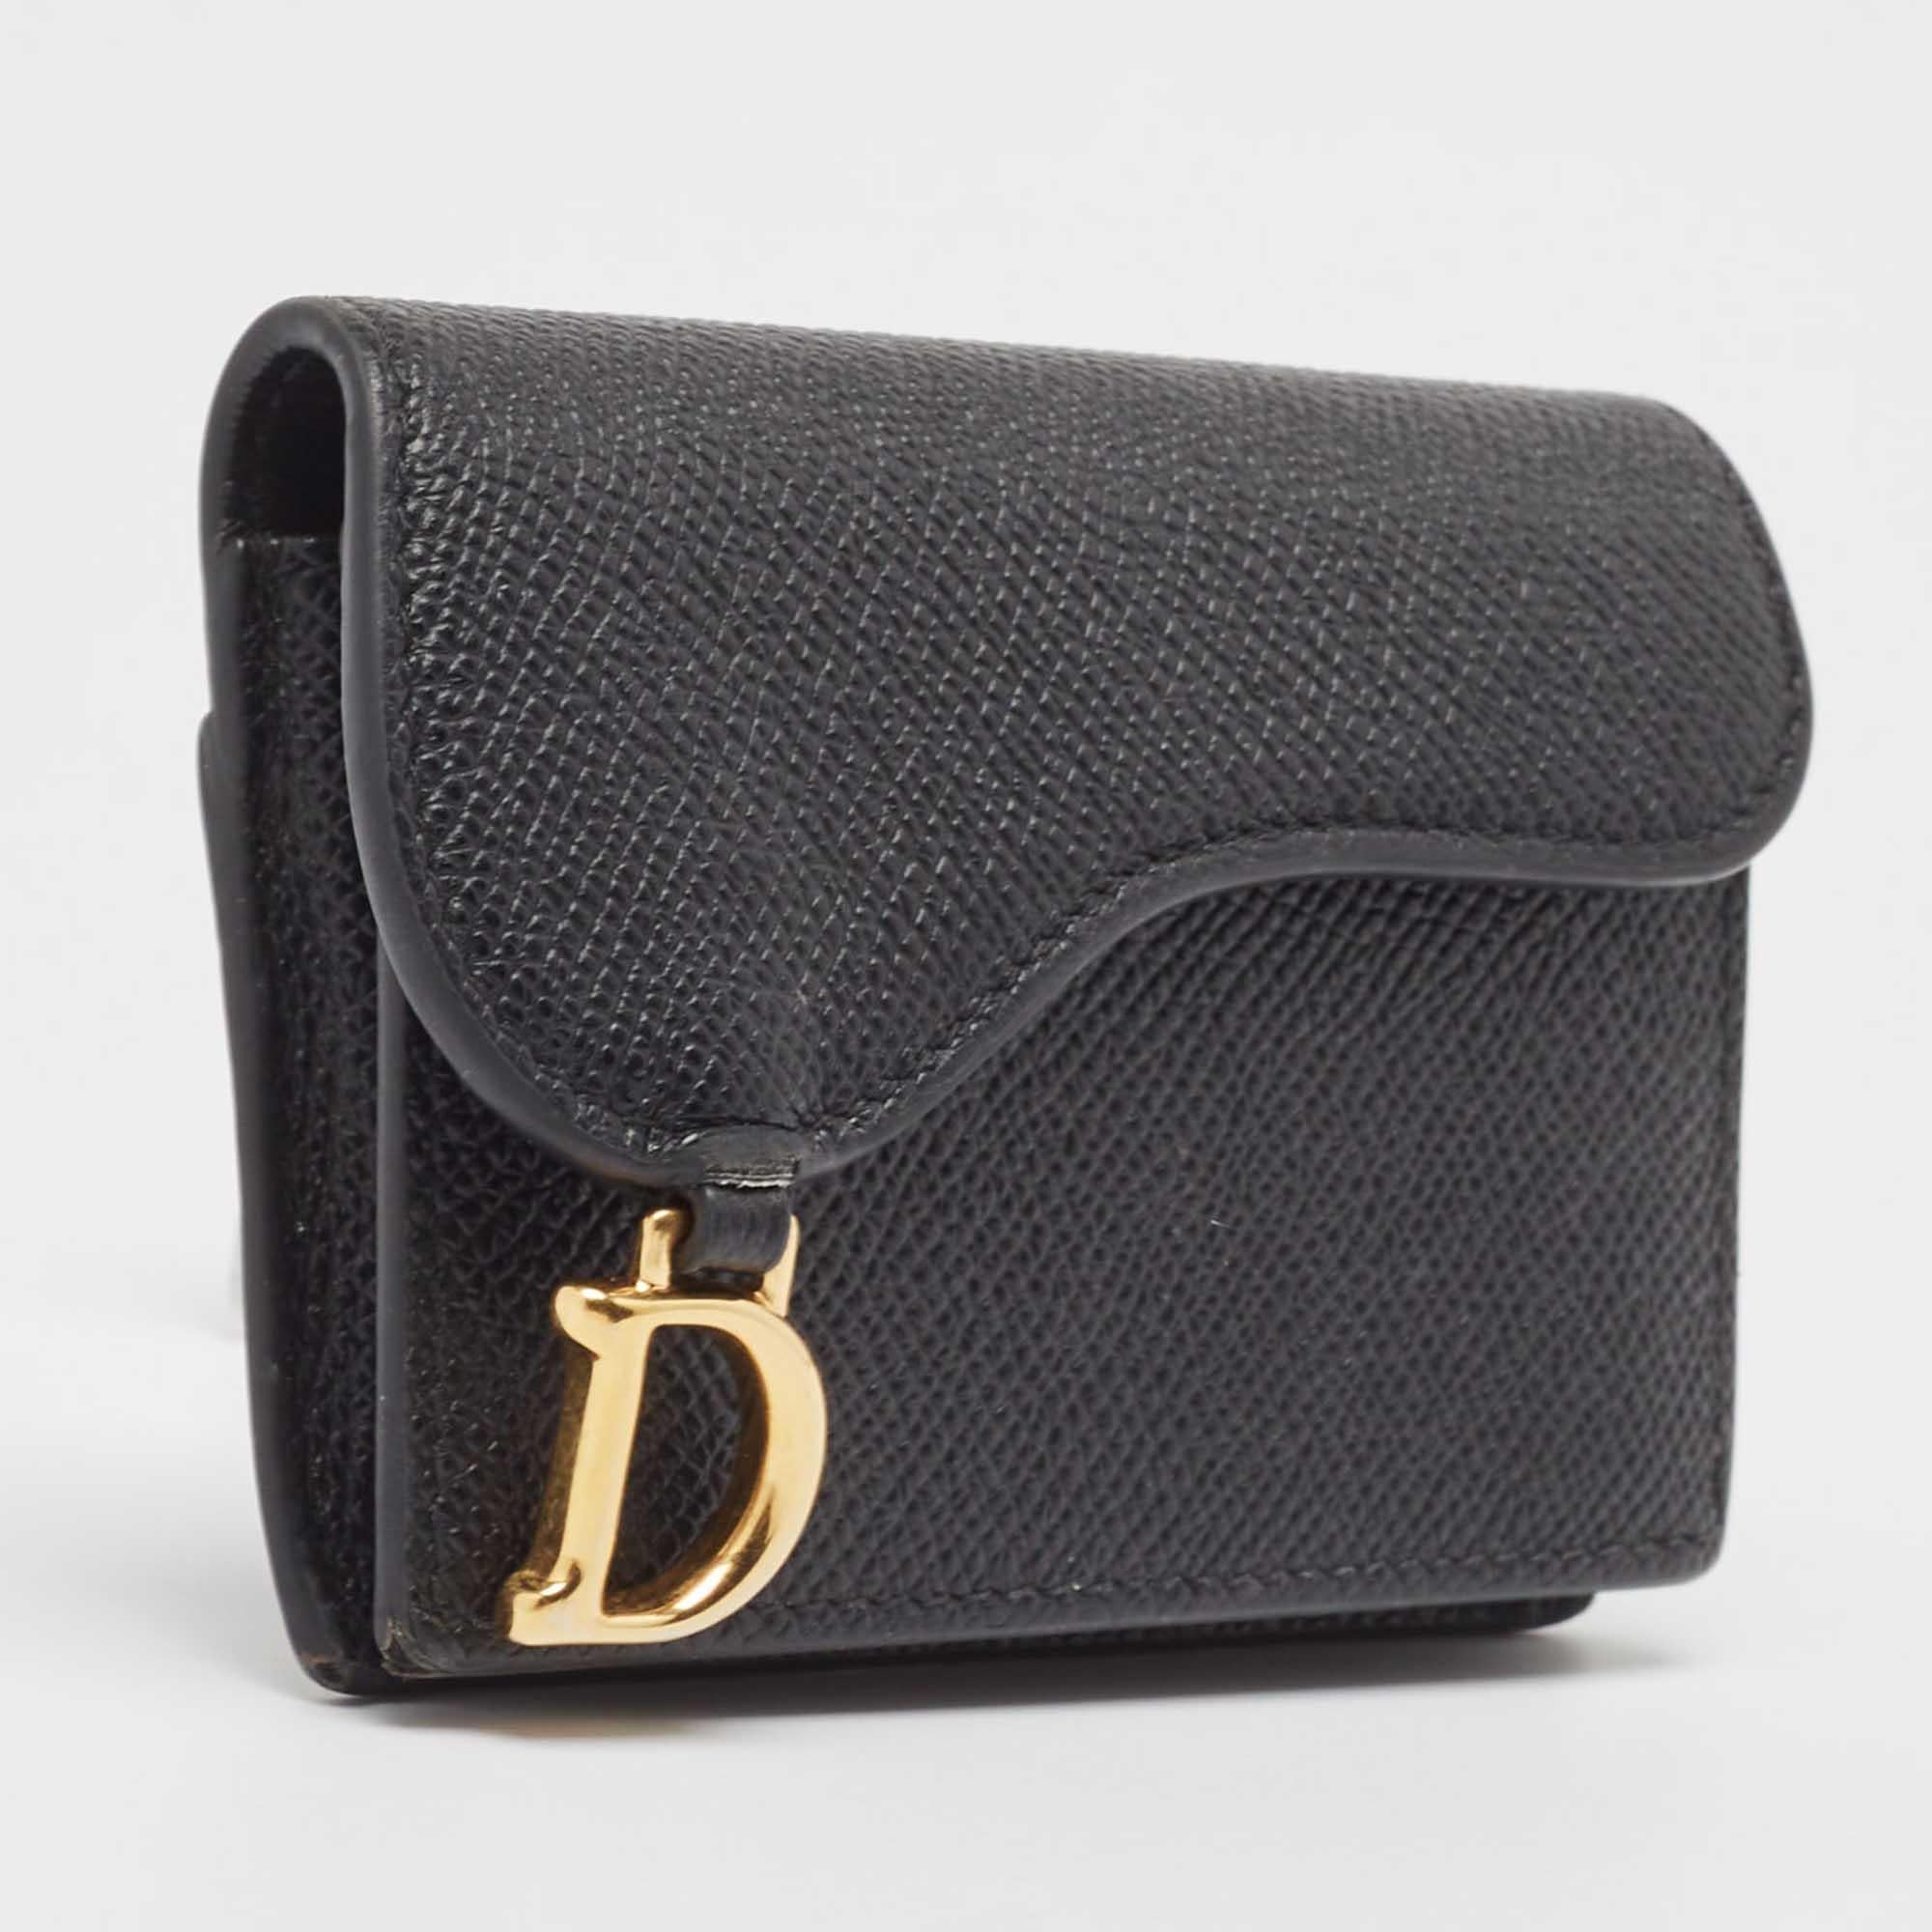 Confectionné en cuir noir, cet étui à cartes Dior est doté de multiples compartiments sécurisés par un rabat inspiré de l'emblématique sac Saddle. La création est complétée par le charme D sur le devant.

